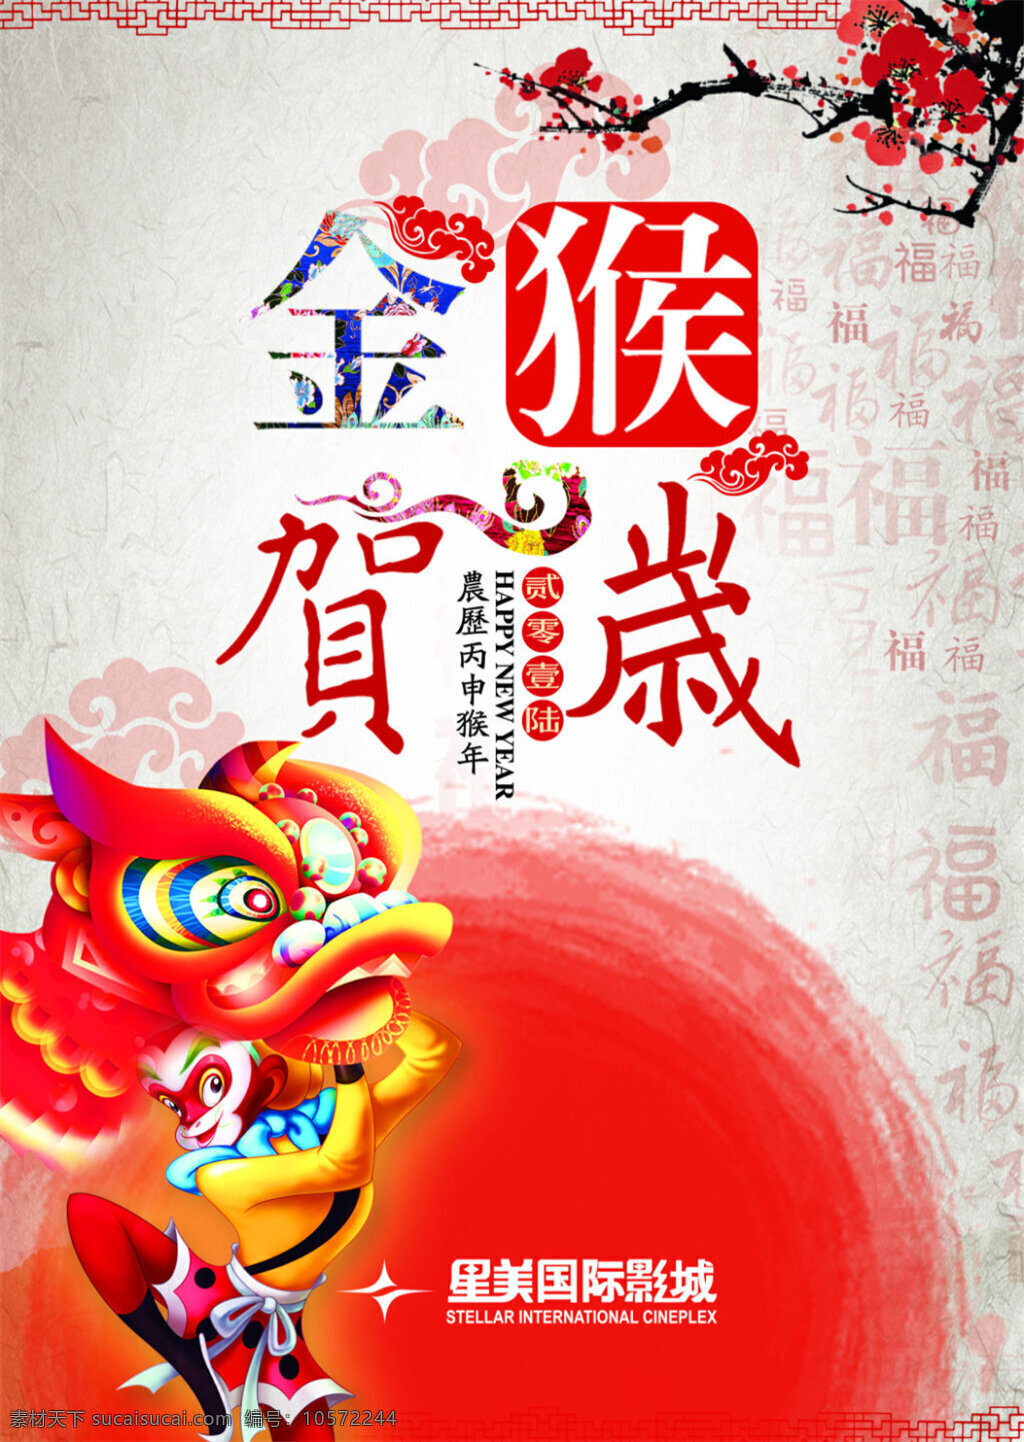 金猴 贺岁 海报 春节 促销海报 福 过年 猴年 猴子 梅 花 商业海报 书法 红色